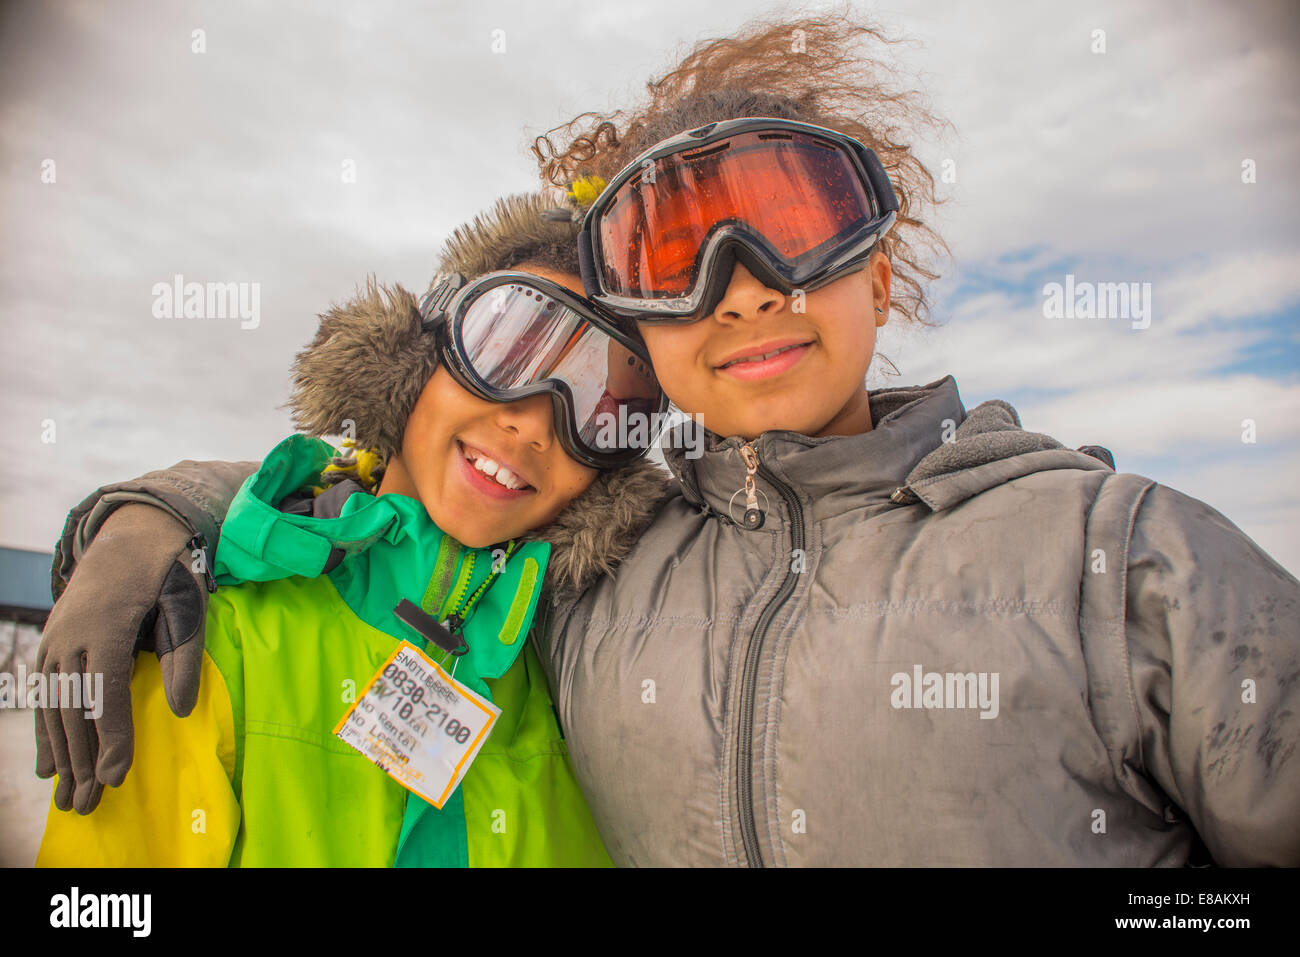 Porträt von Kindern in Skibrillen Stockfoto